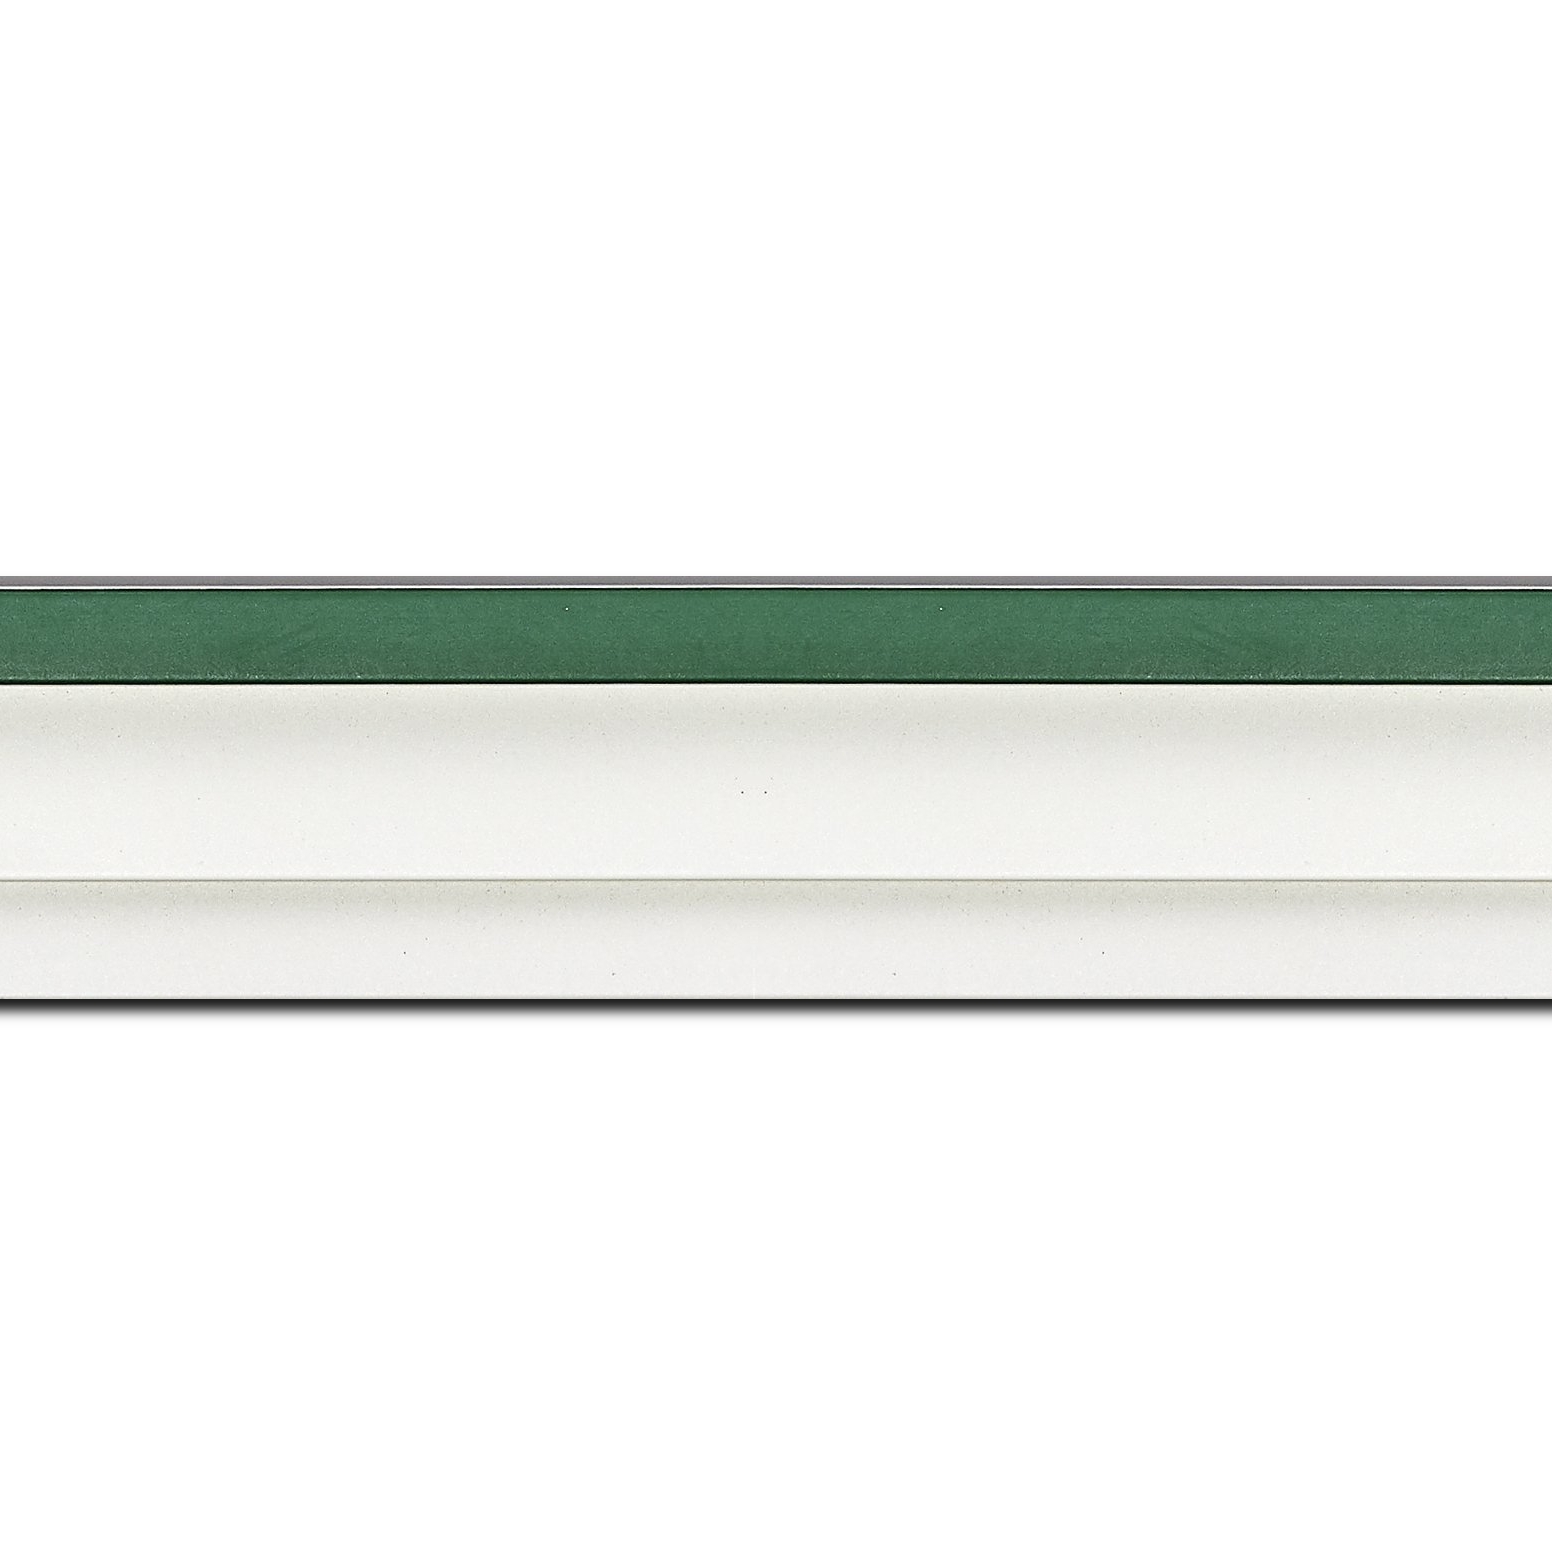 Pack par 12m, bois caisse américaine profil escalier largeur 4.4cm blanc mat filet vert (spécialement conçu pour les châssis d'une épaisseur jusqu’à 2.5cm )(longueur baguette pouvant varier entre 2.40m et 3m selon arrivage des bois)